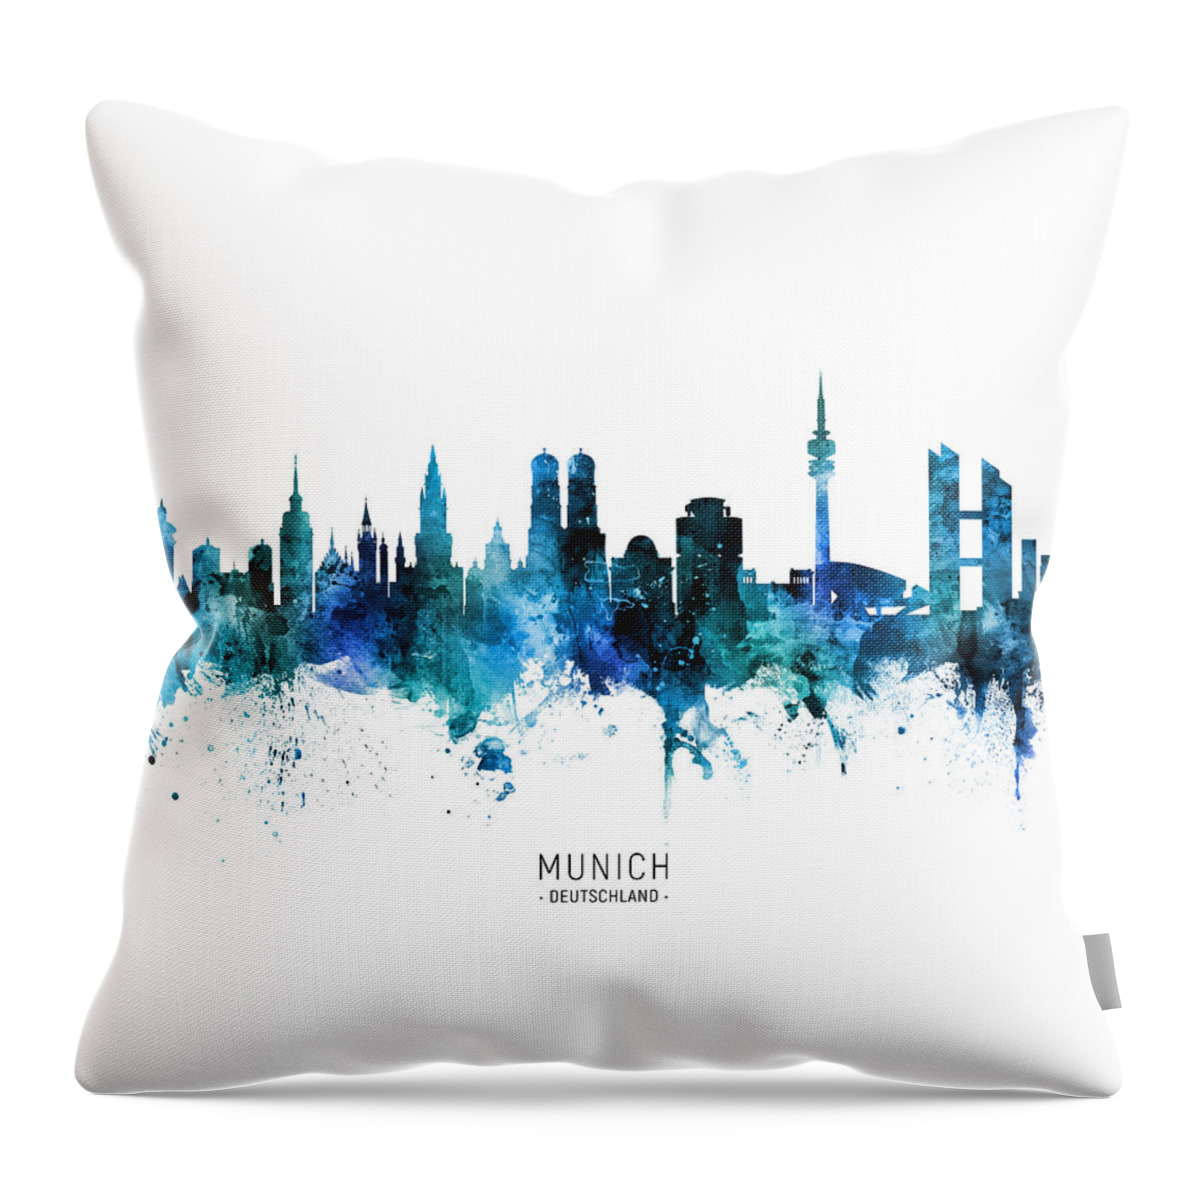 Munich Throw Pillow featuring the digital art Munich Germany Skyline #12 by Michael Tompsett